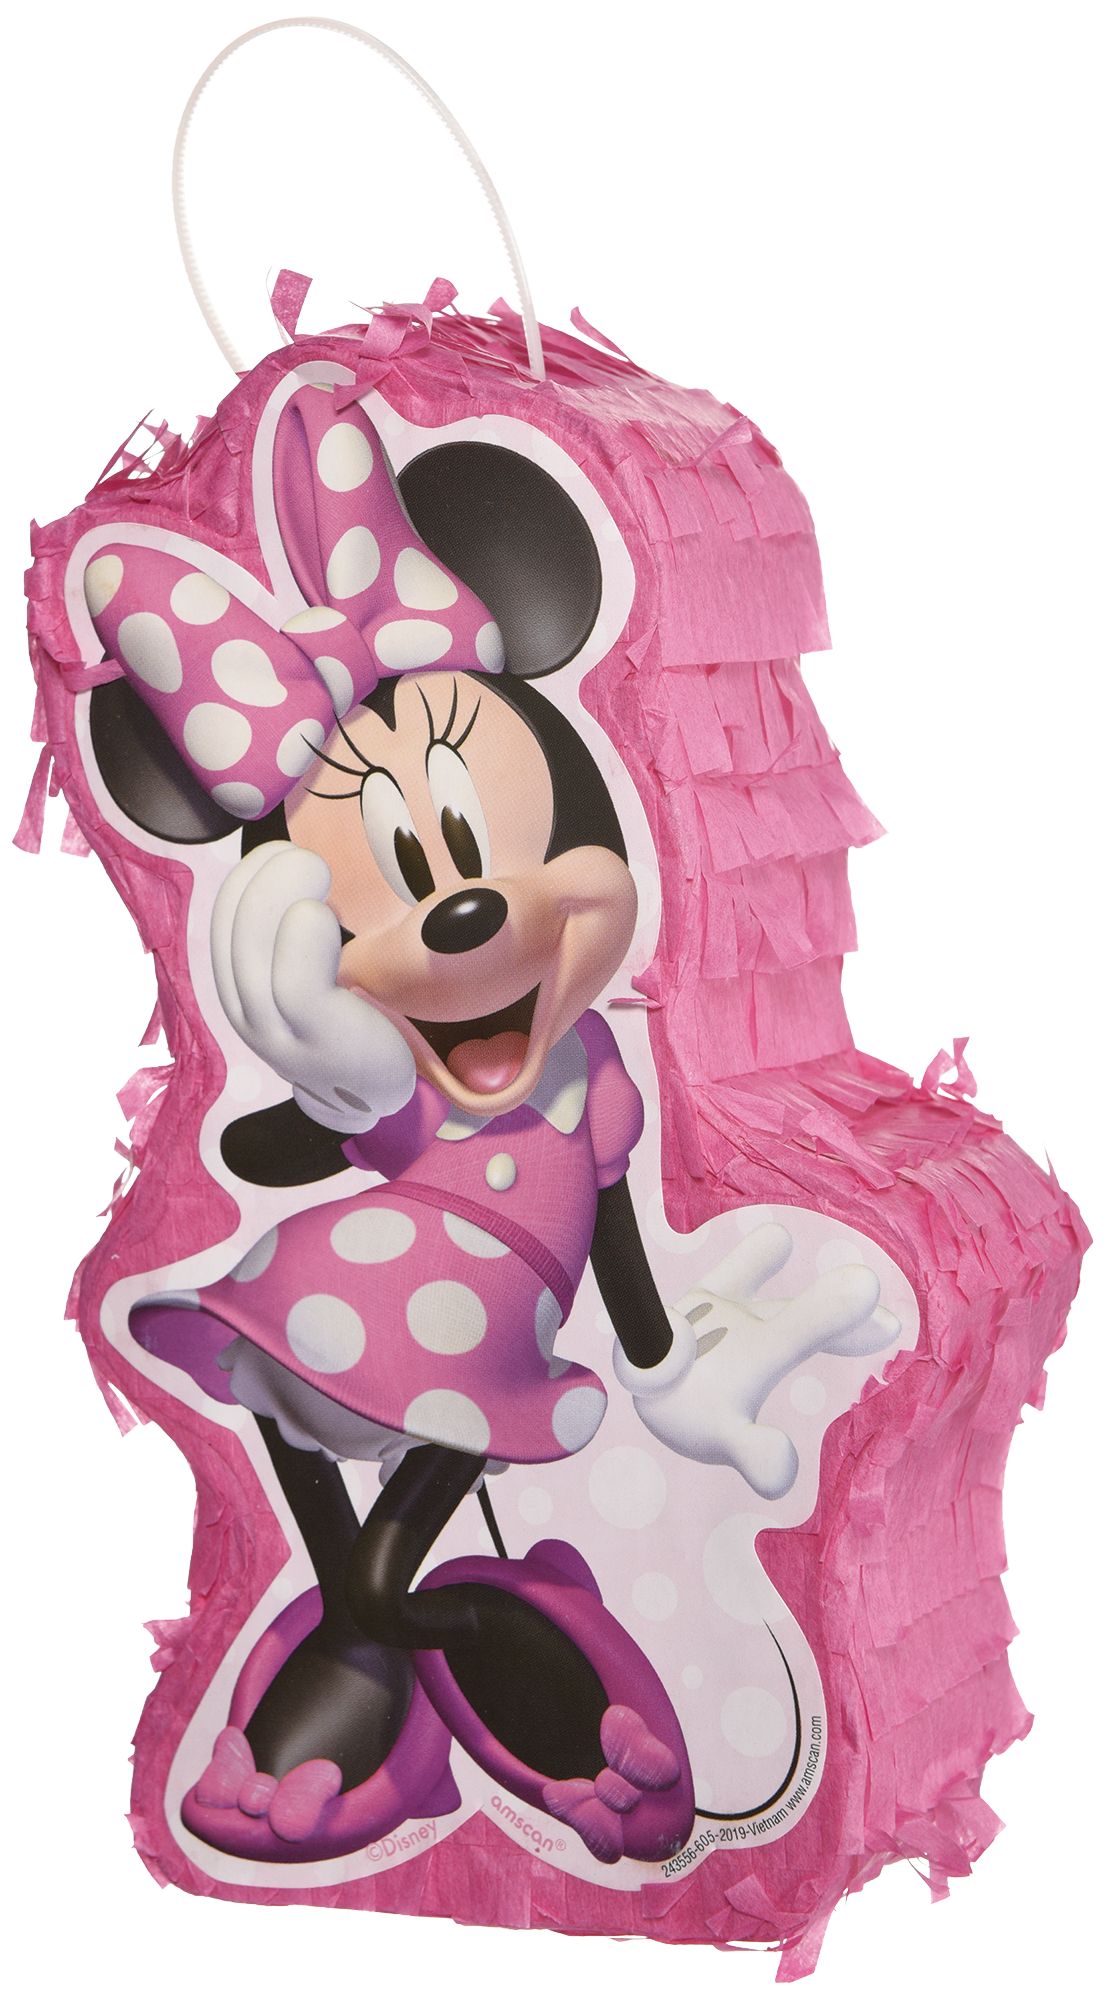 Décor de fête d'anniversaire à thème Disney Minnie Mouse pour